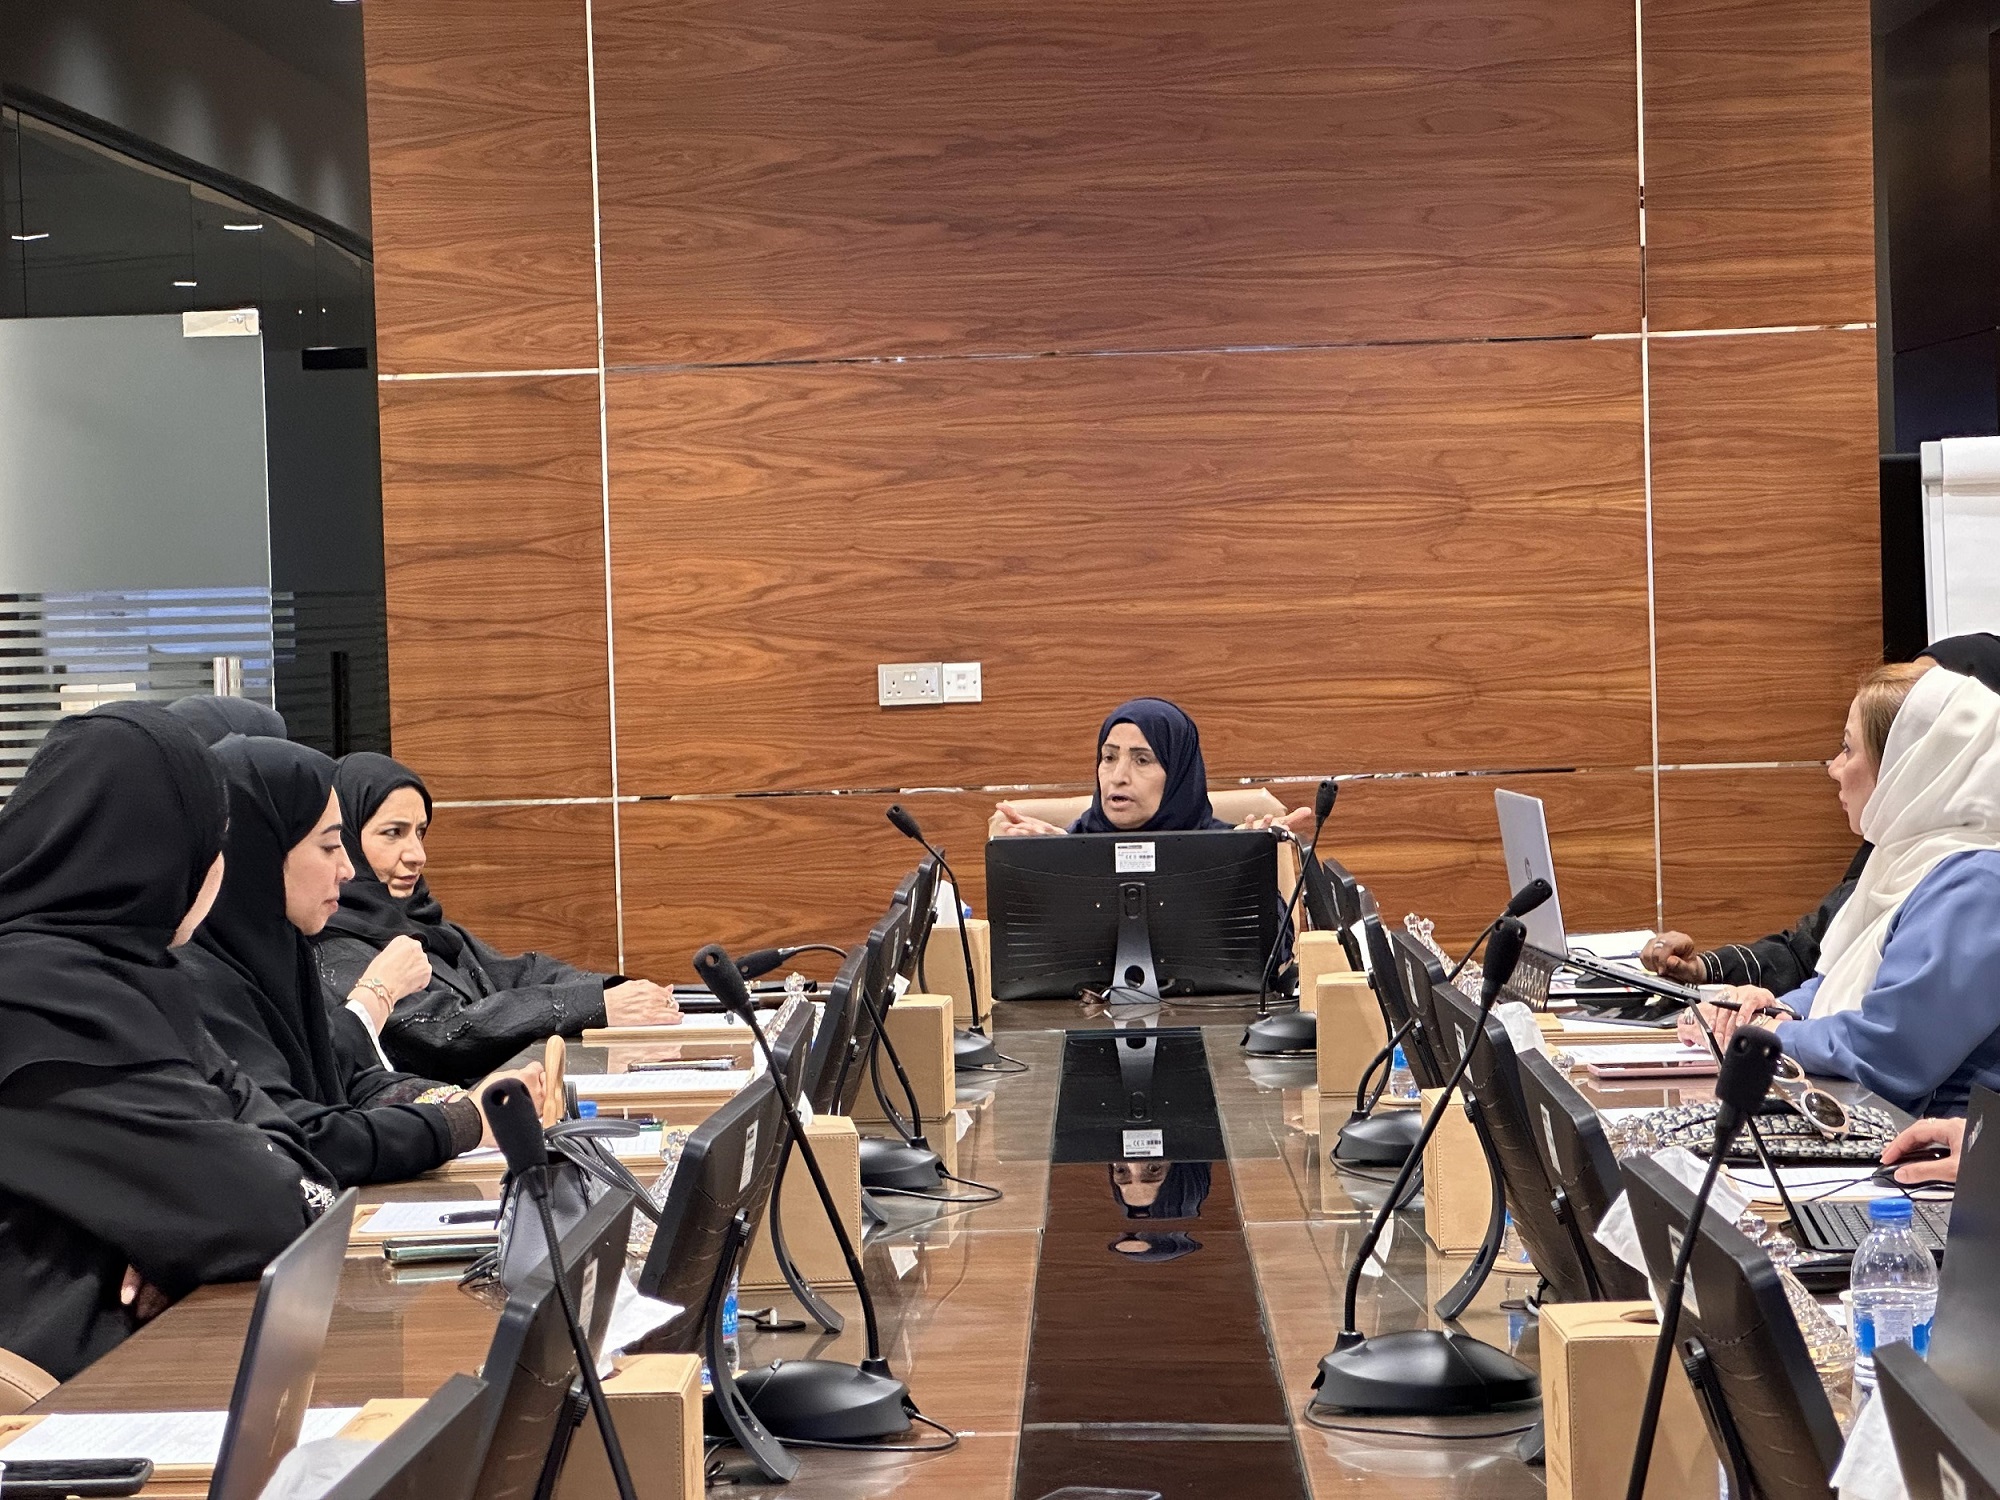 مجلس سيدات اعمال عجمان يعقد اجتماعه الأول للعام الجاري